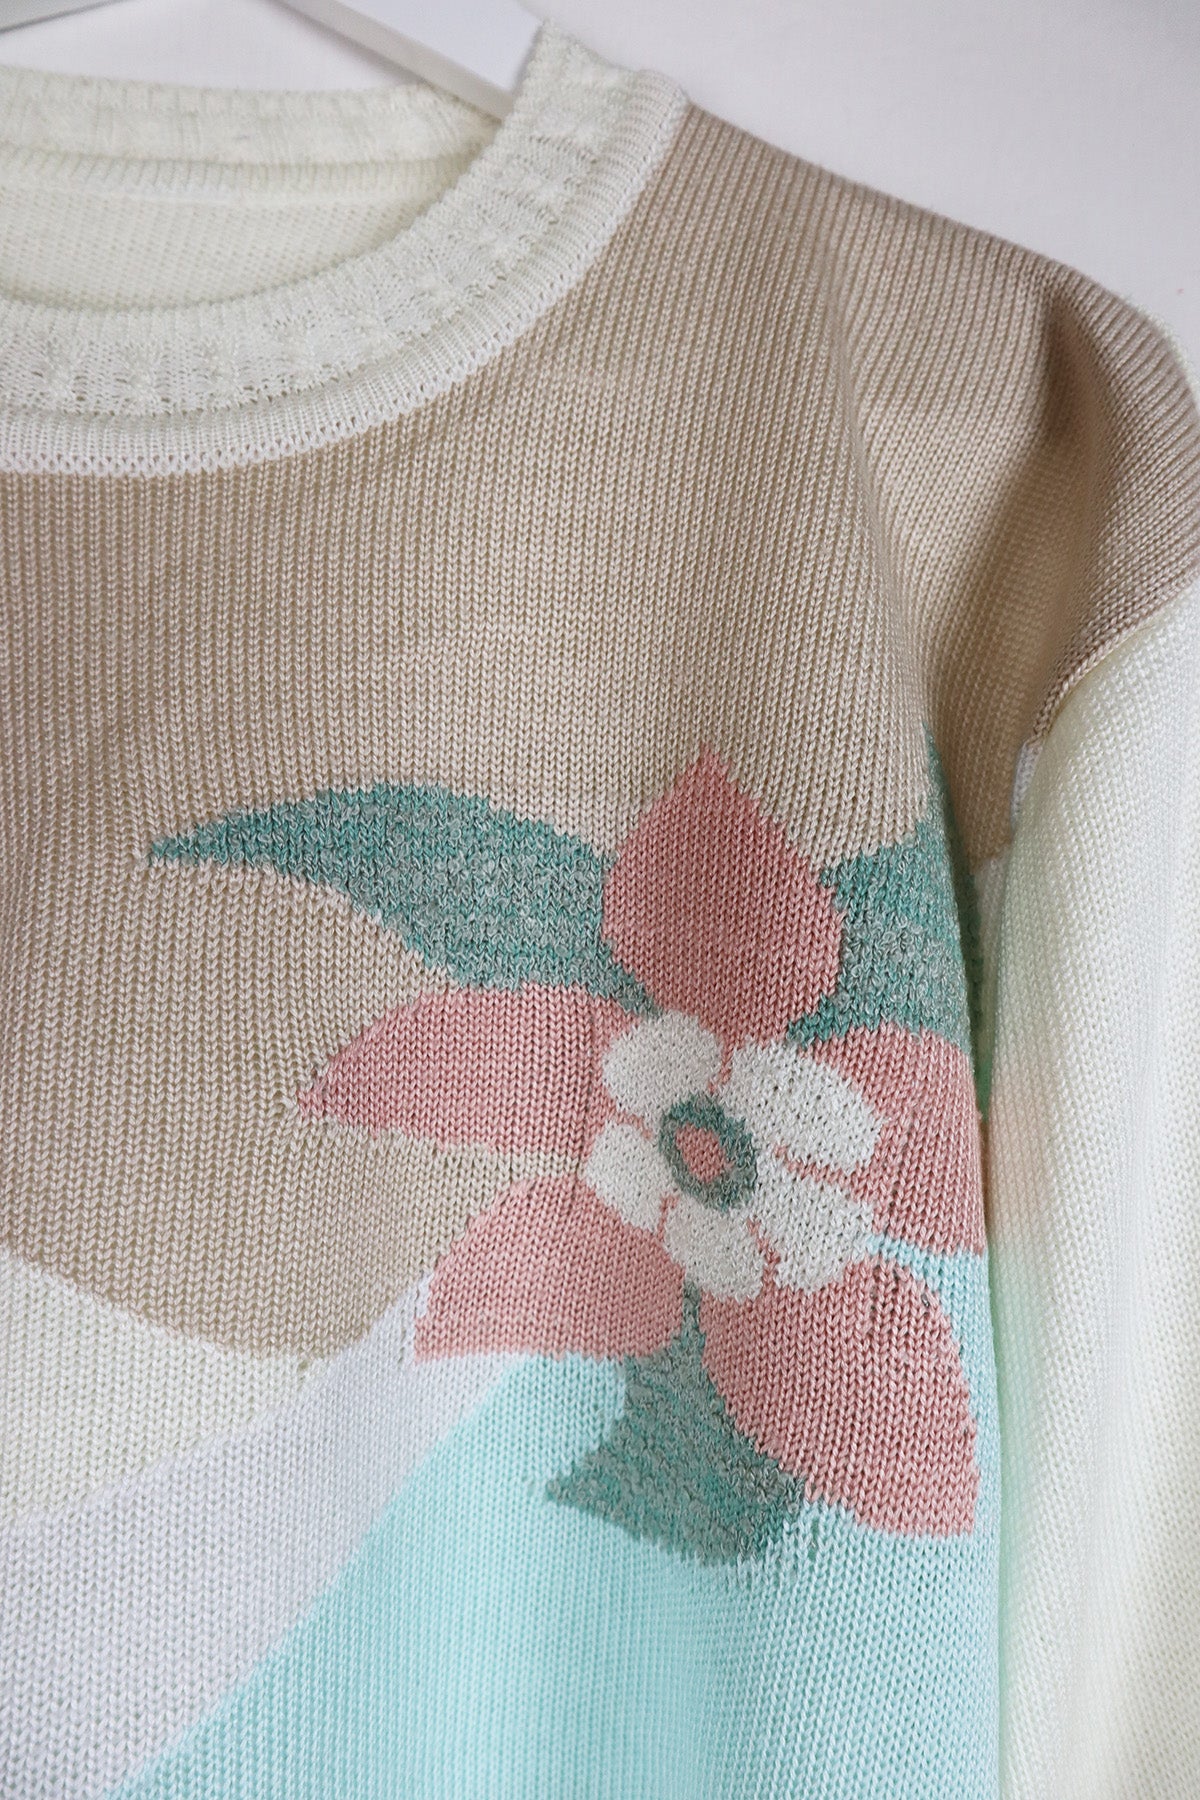 Pullover Vintage Pastell Farbflächen ( Gr. M/L )